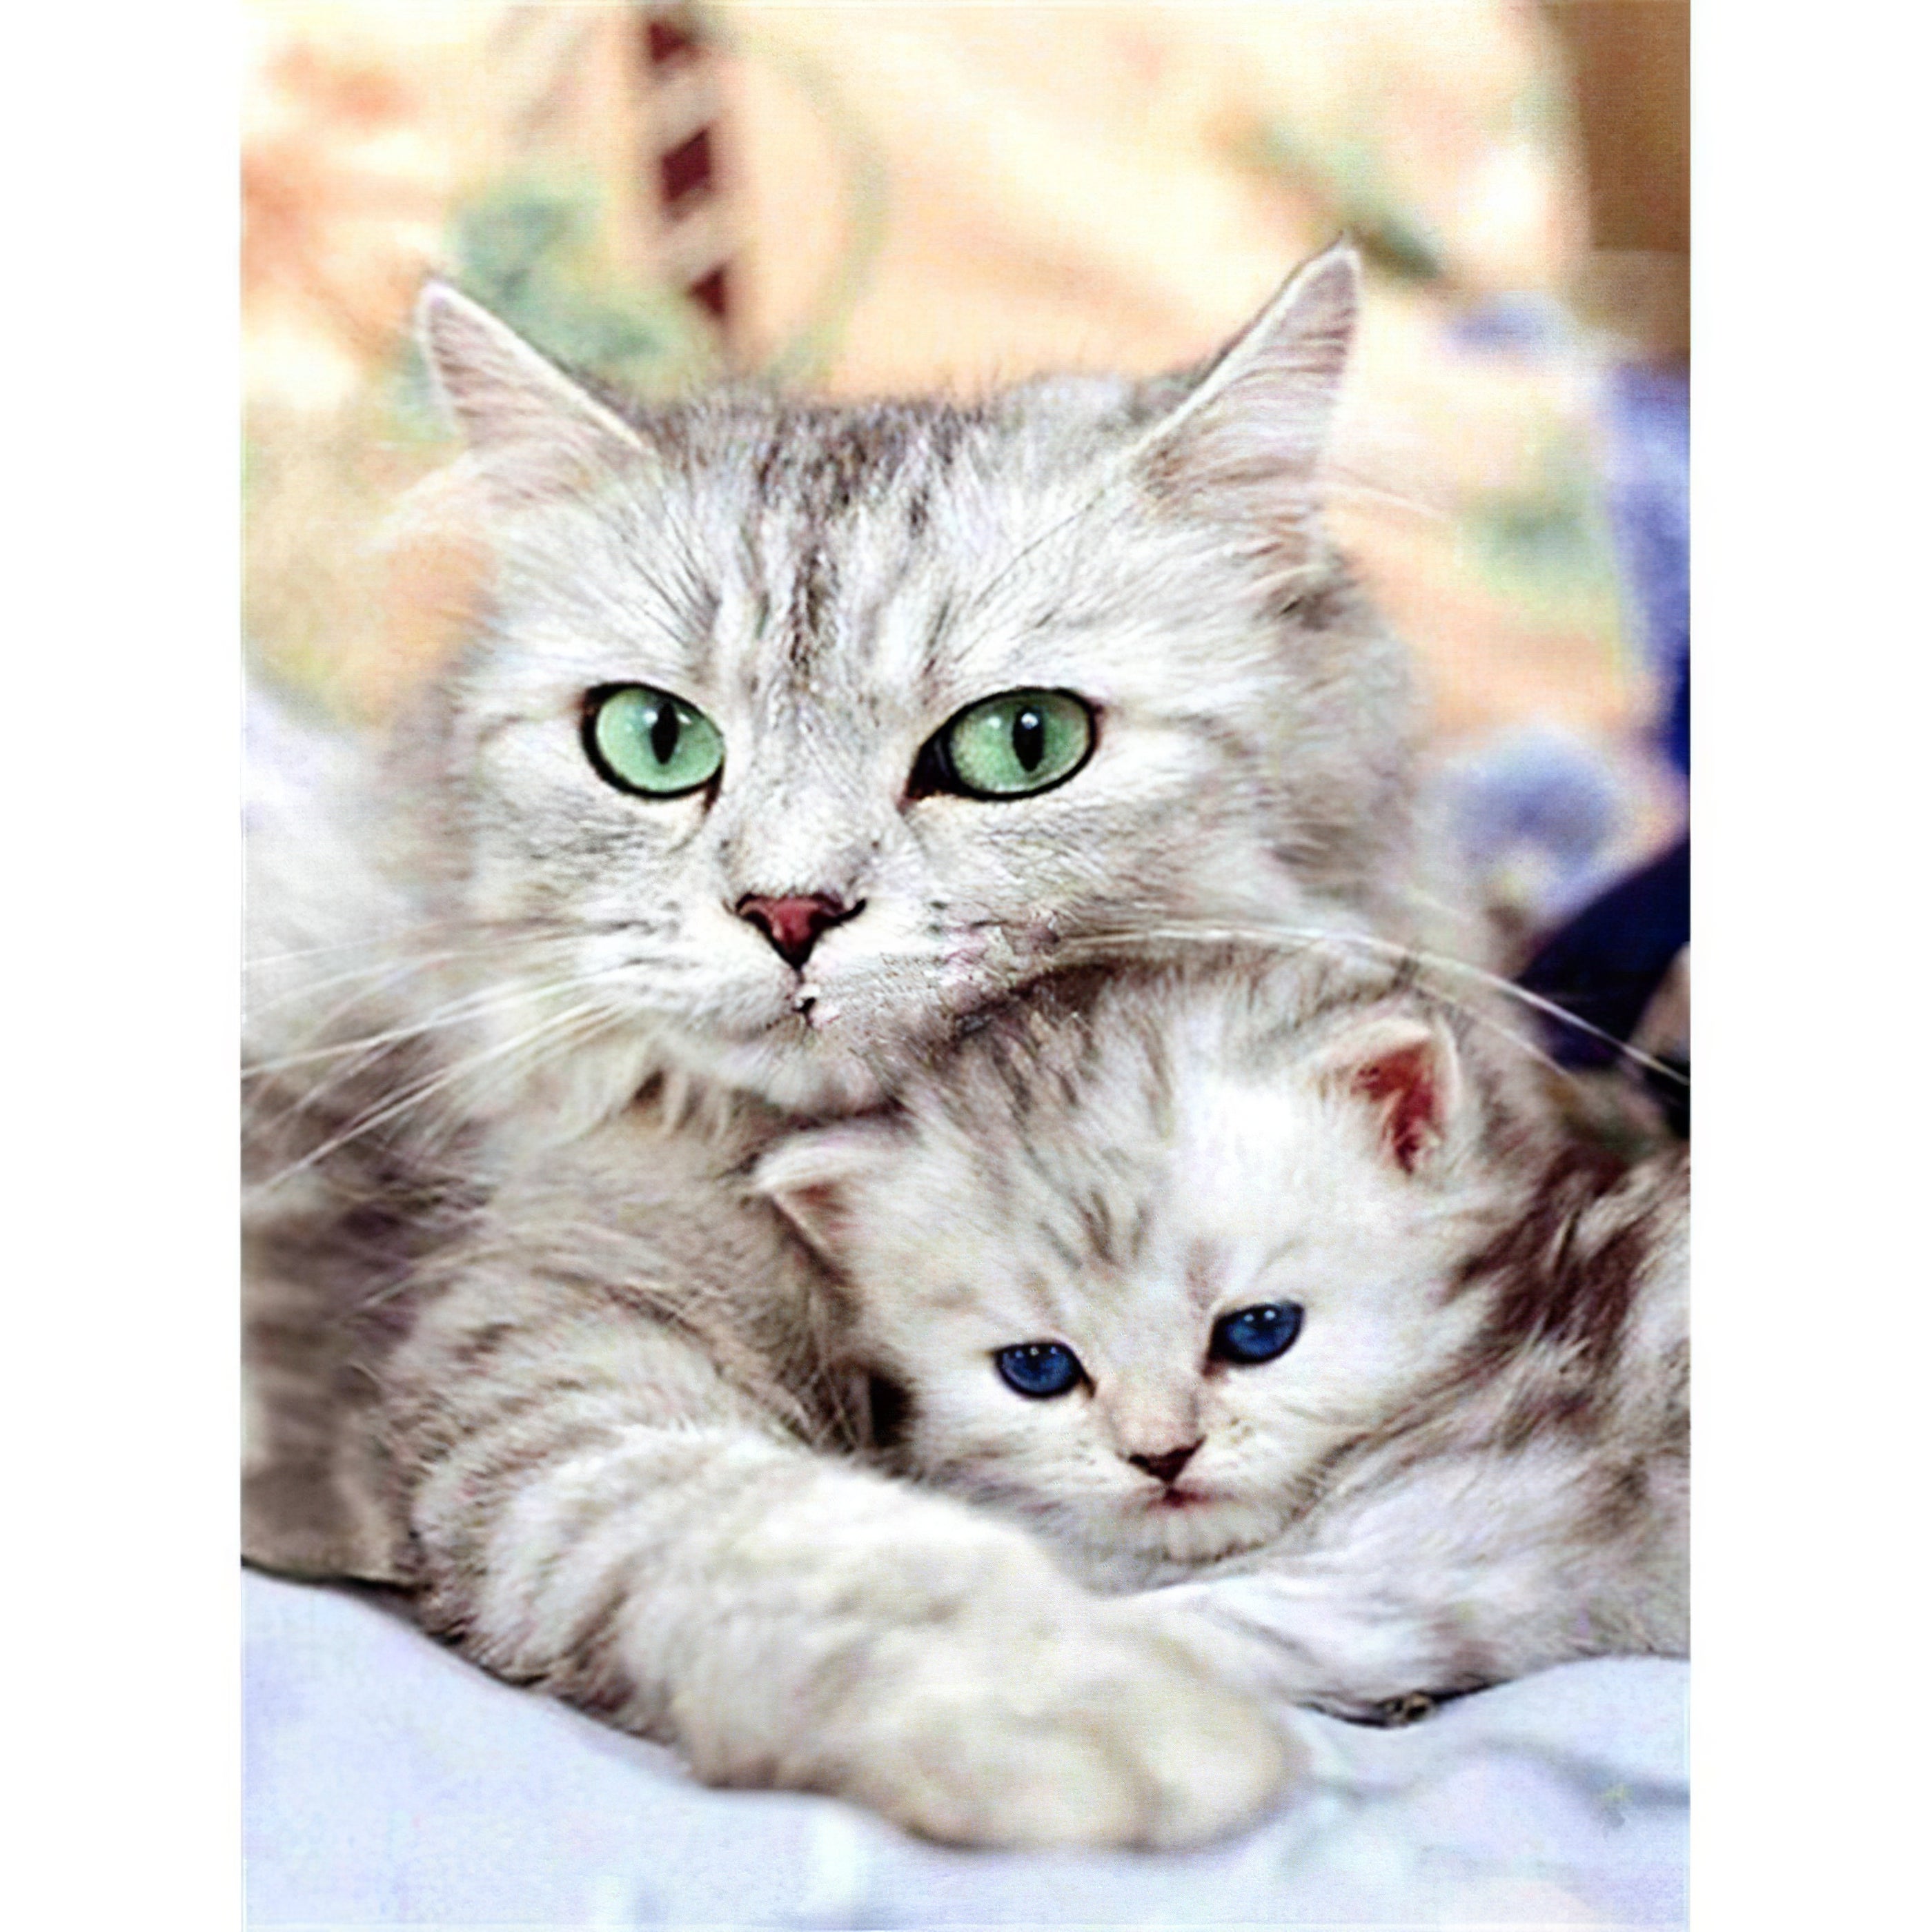 Una pintura de diamantes llamado 'Dos hermosos gatos' - Meencantalapinturadediamantes